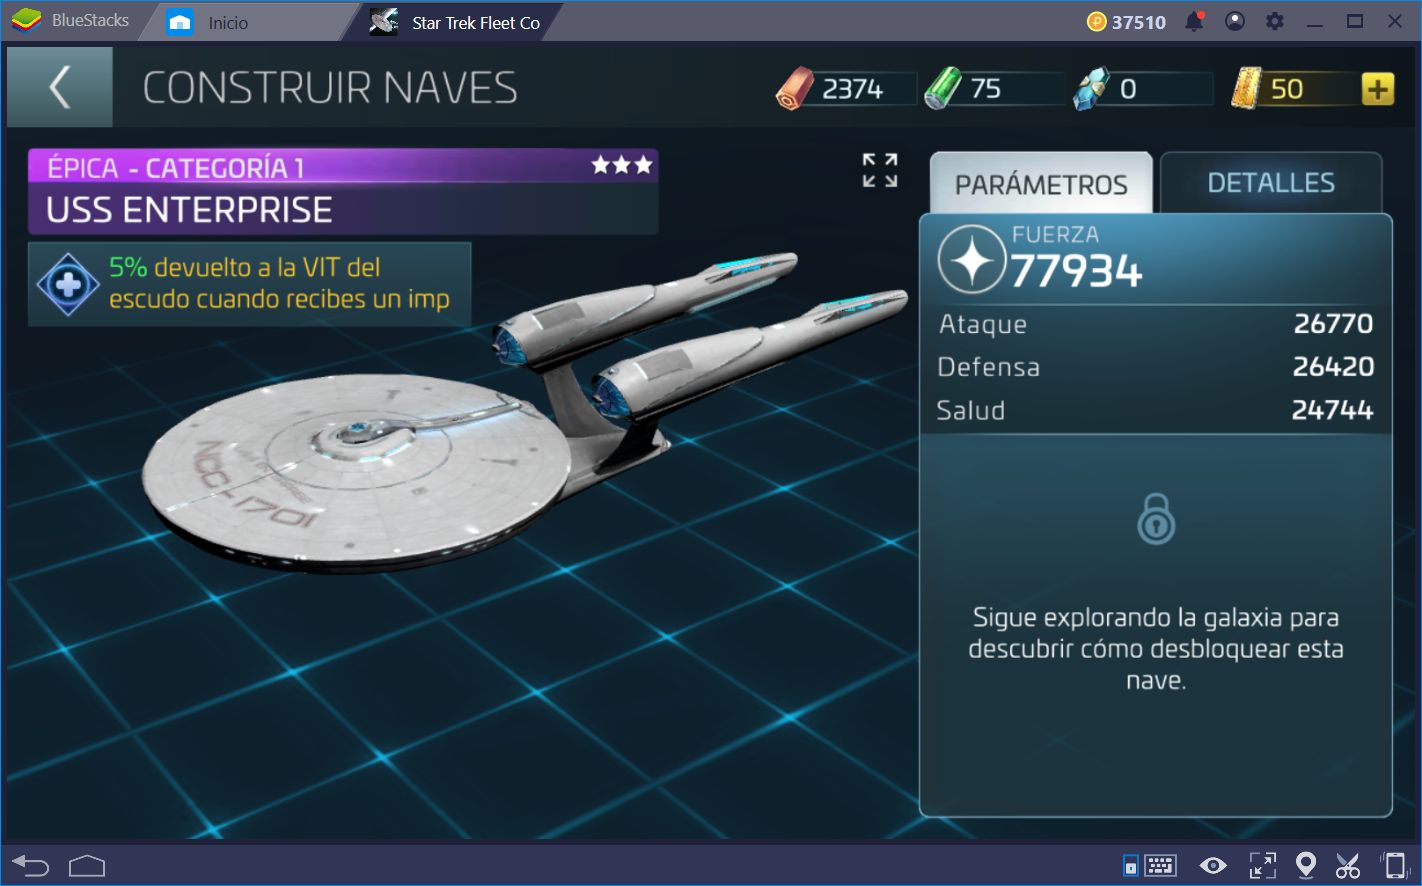 Cómo Mejorar tu Flota y Explorar la Galaxia en Star Trek Fleet Command